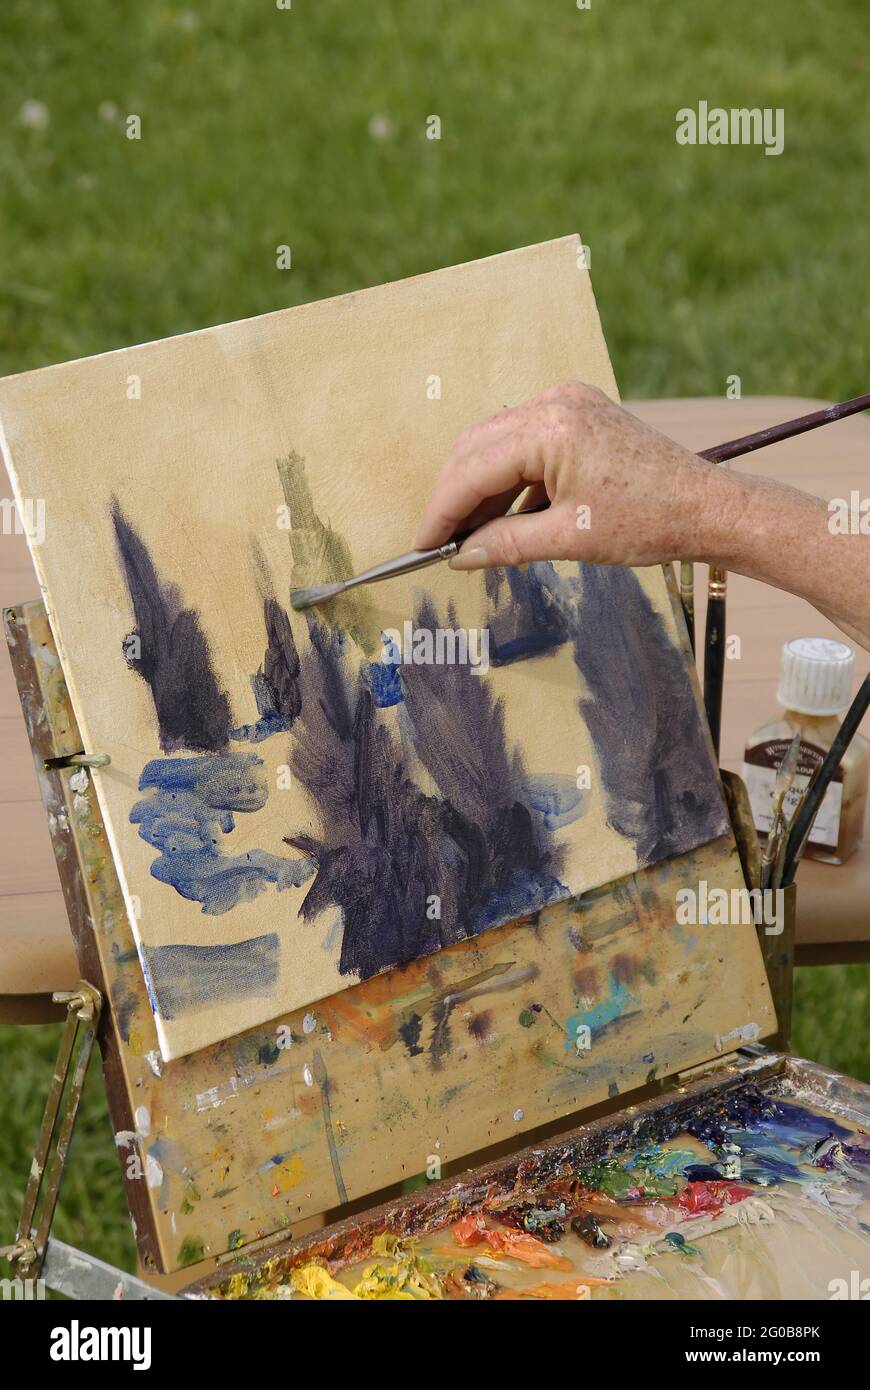 AUGUSTA, STATI UNITI - 01 maggio 2009: Un closeup della mano di un artista e del pennello che lavora su un paesaggio. Foto Stock